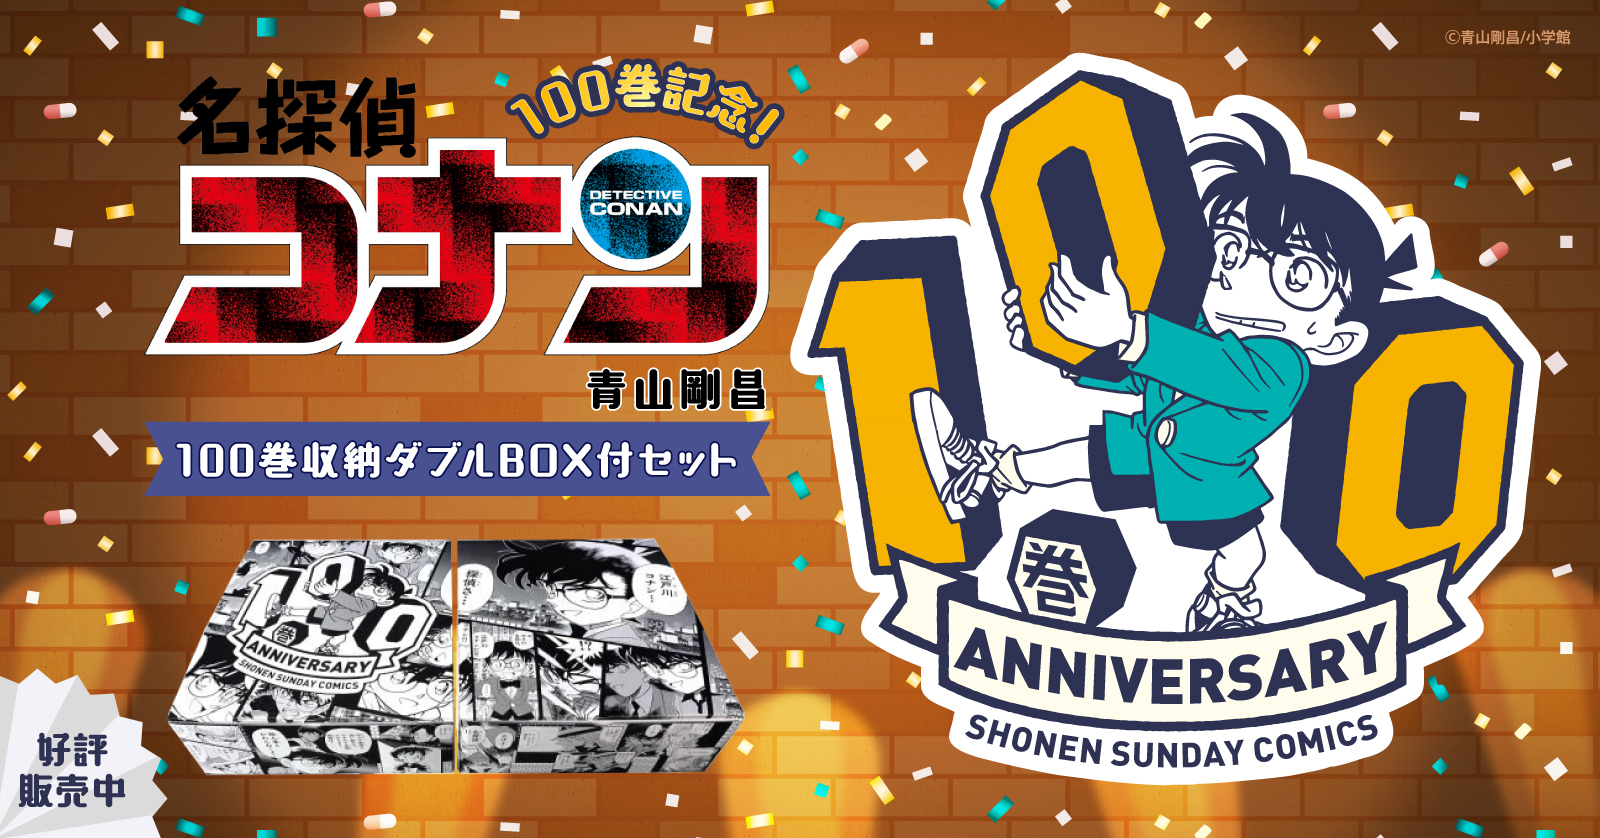 名探偵コナン (1-104巻 最新刊) +100巻記念オリジナル収納BOX2個付